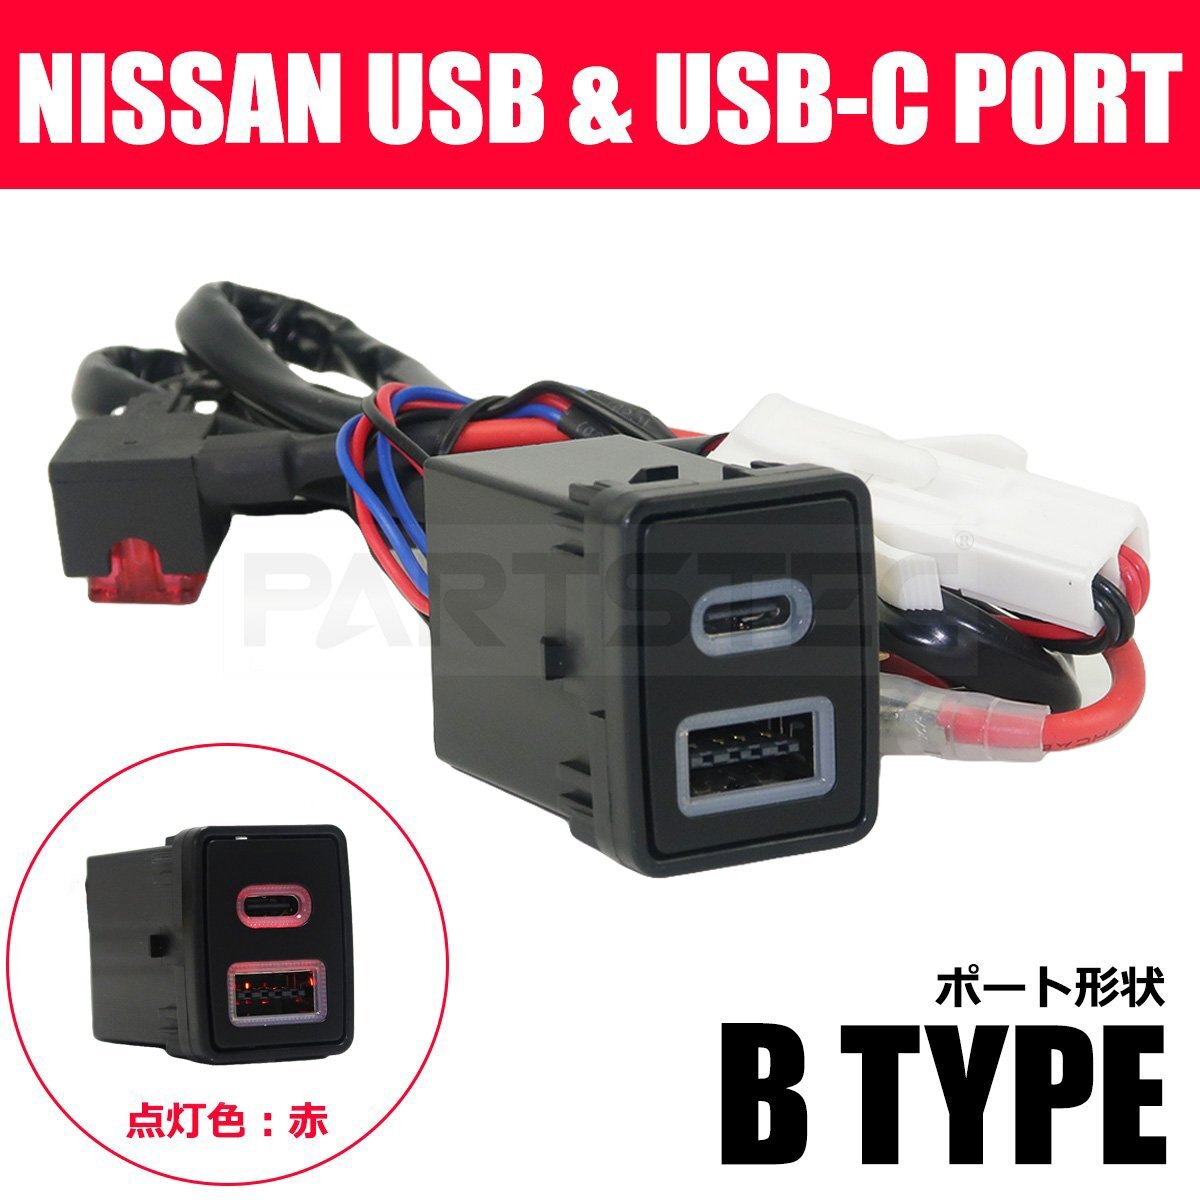 日産用 USB USB-C 2ポート搭載 スイッチホールパネル 日産 Bタイプ スマホ タブレット 充電 ビルドイン F15 ジューク /147-187_画像1